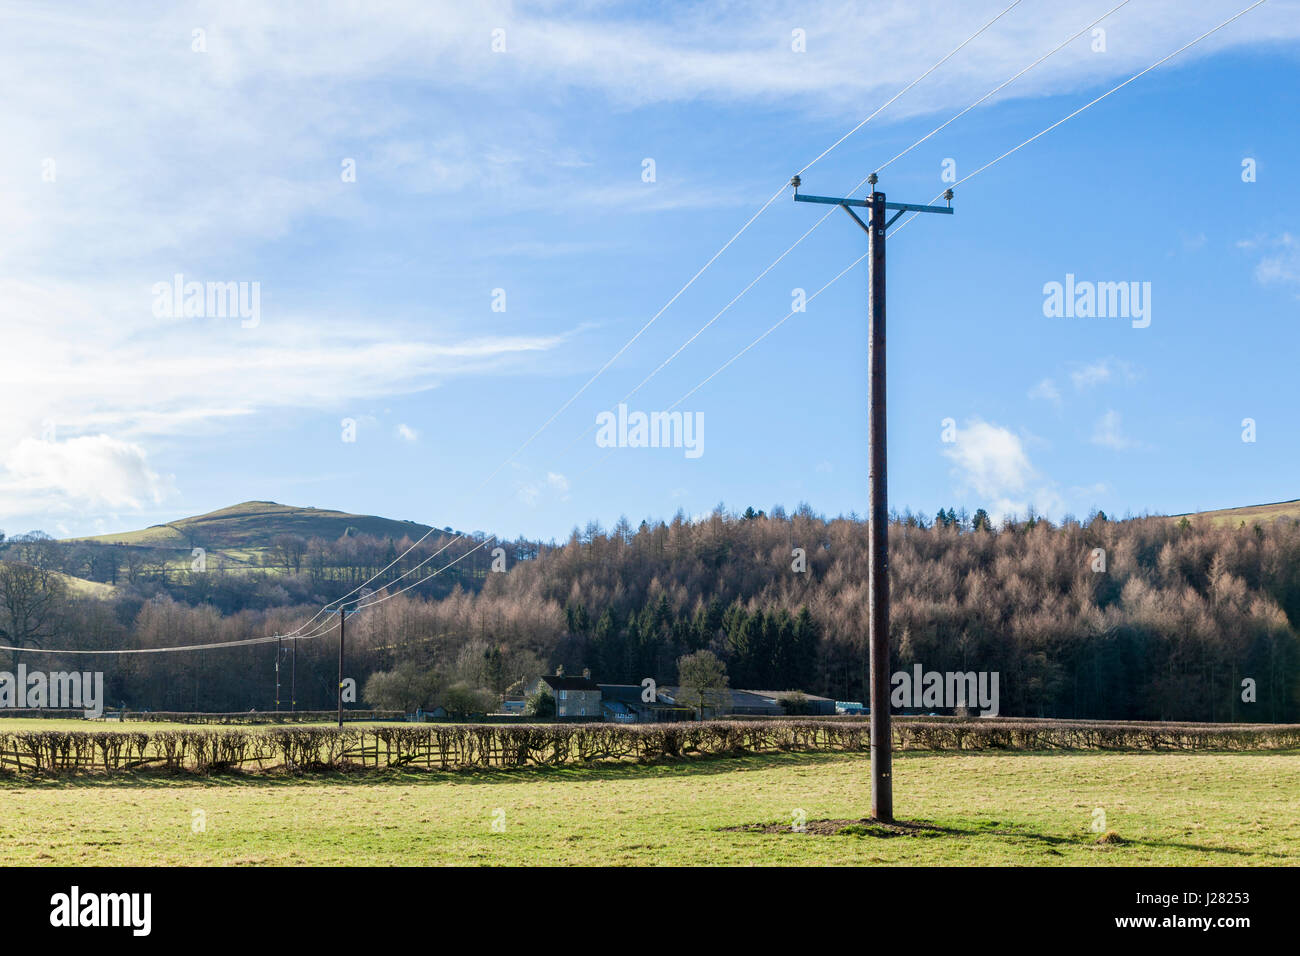 L'approvisionnement en électricité dans les campagnes. Un poteau en bois avec une ligne traversant les terres agricoles rurales près de Offerton, Derbyshire, Angleterre, RU Banque D'Images